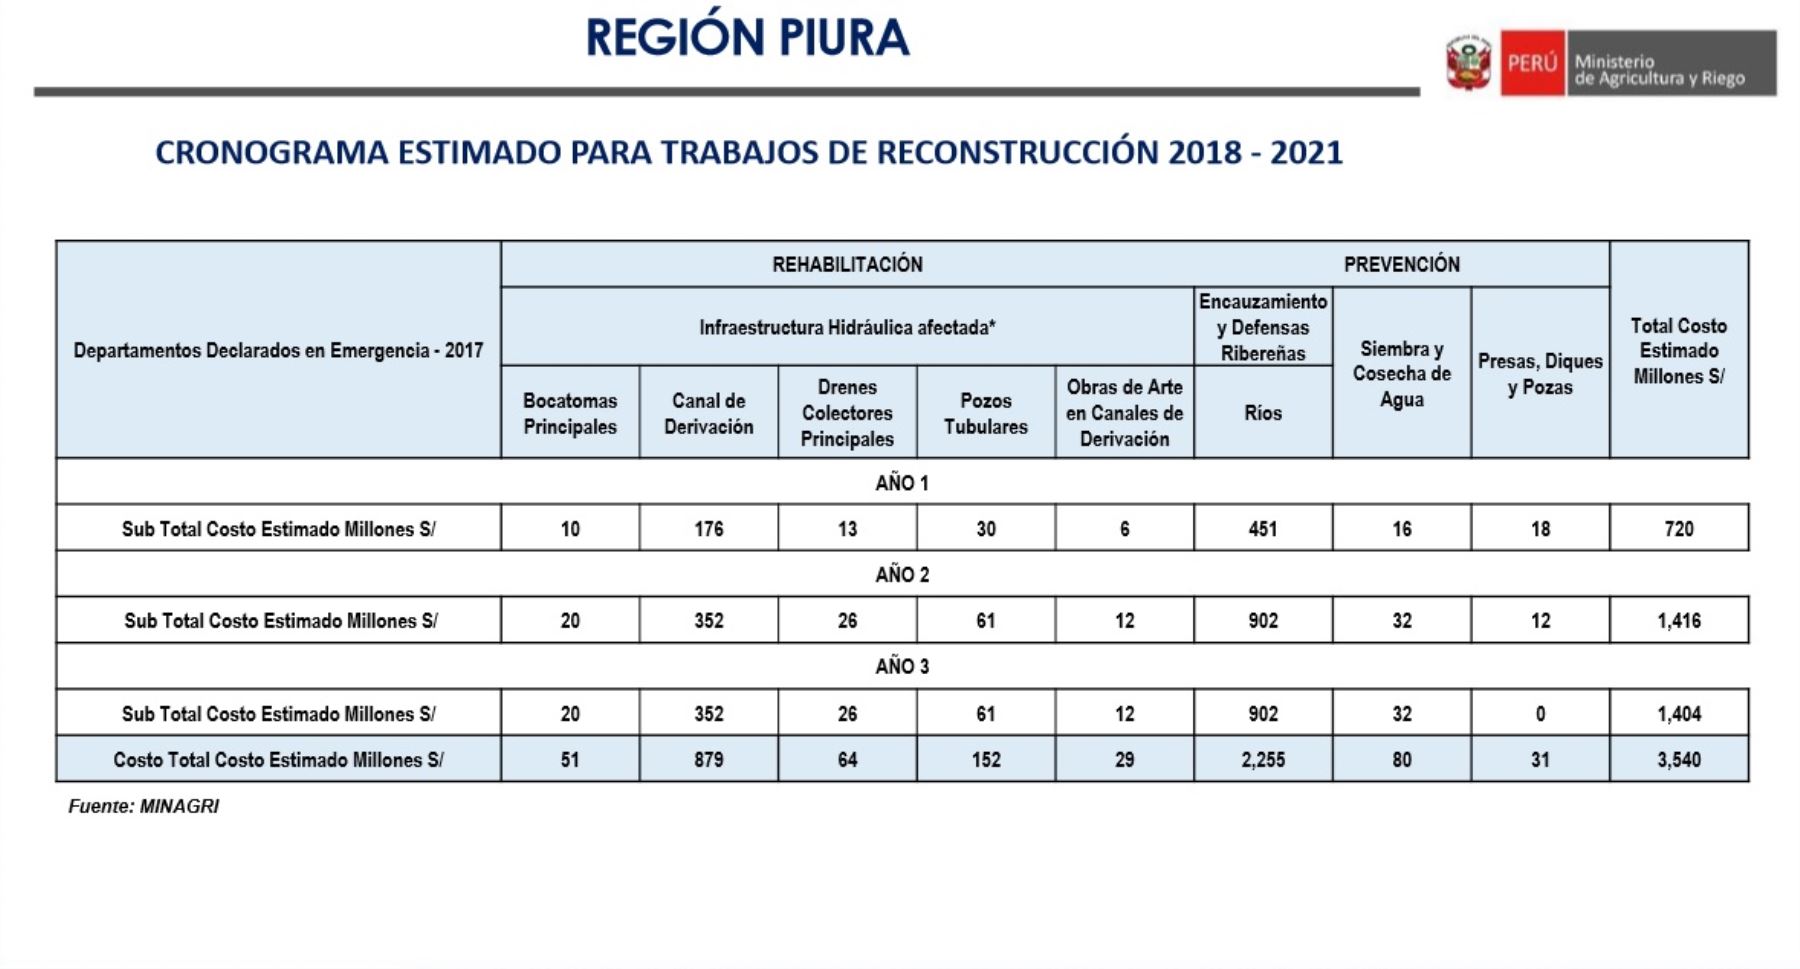 Cronograma estimado de las obras de reconstrucción con cambios que se ejecutarán en el sector agrario de la región Piura, elaborados por el Ministerio de Agricultura y Riego.